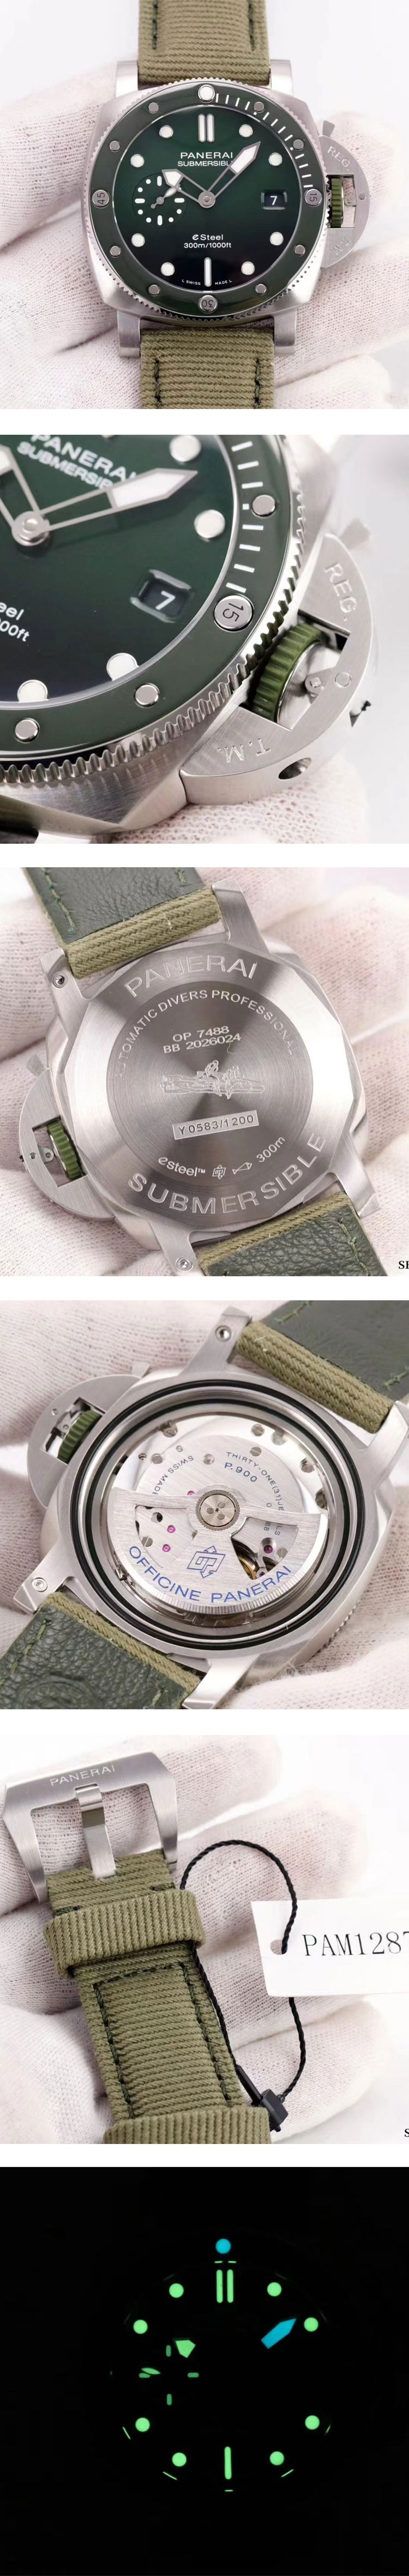 最高級パネライコピー時計 クアランタクアトロ サブマーシブル PAM01287